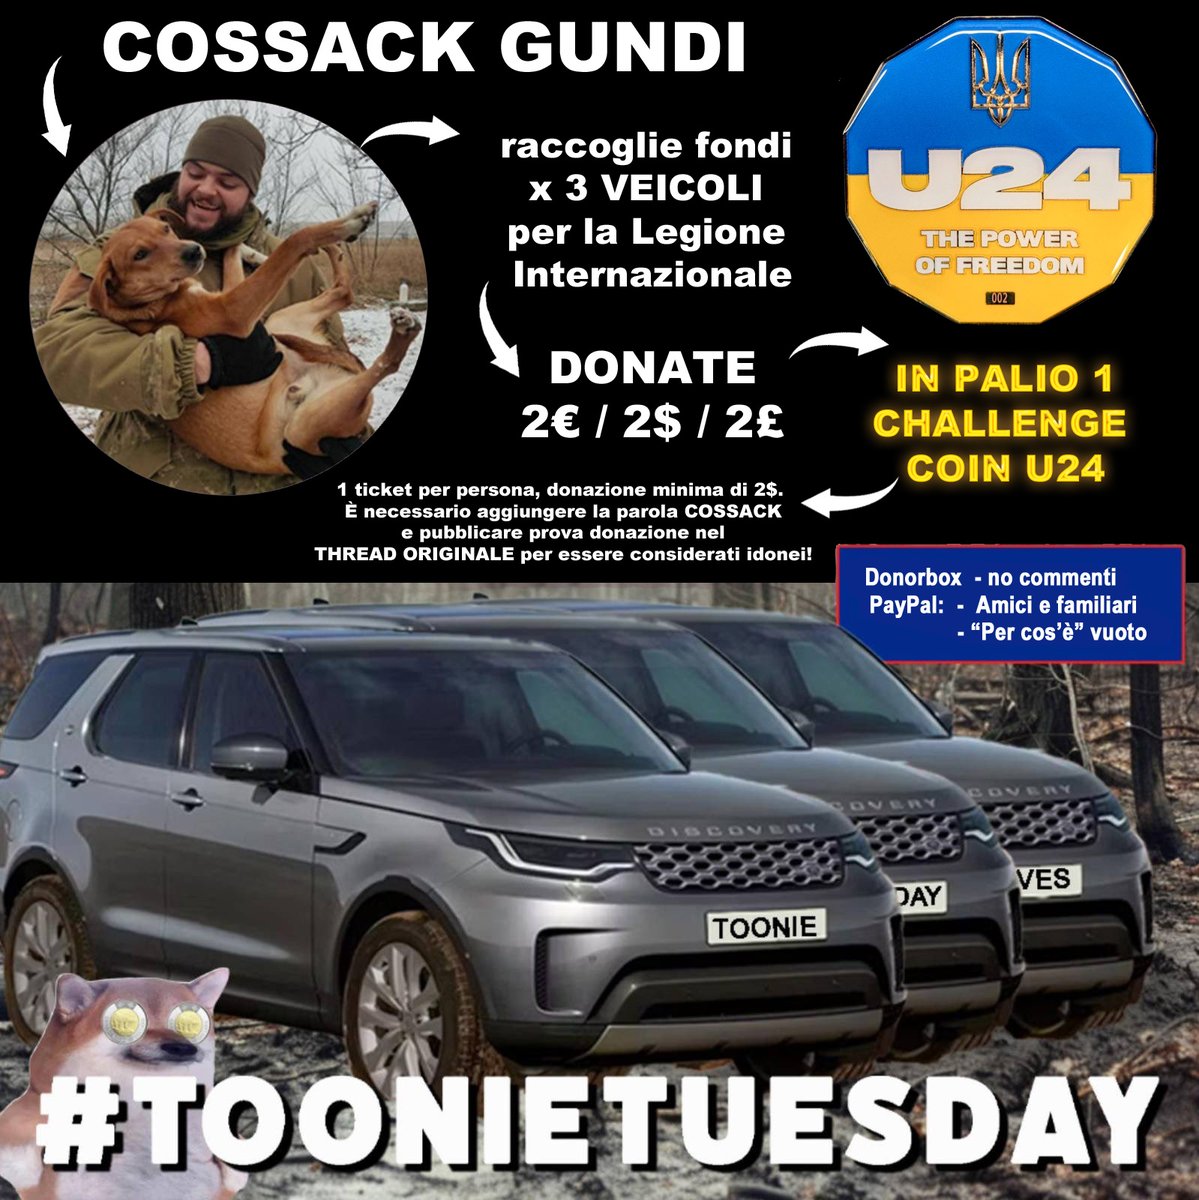 È #ToonieTuesday e oggi supporta @cossackgundi 🇺🇦 
INFO IN GRAFICA

Dona qui:
donorbox.org/toonie-tuesday…
send.monobank.ua/jar/9ZTDpQG8R 

❤️, RT, Commenta con screenshot donazione + COSSACK qui: x.com/toonie_tuesday…

Un enorme ringraziamento a @Doshka_F
per aver elaborato le donazioni!